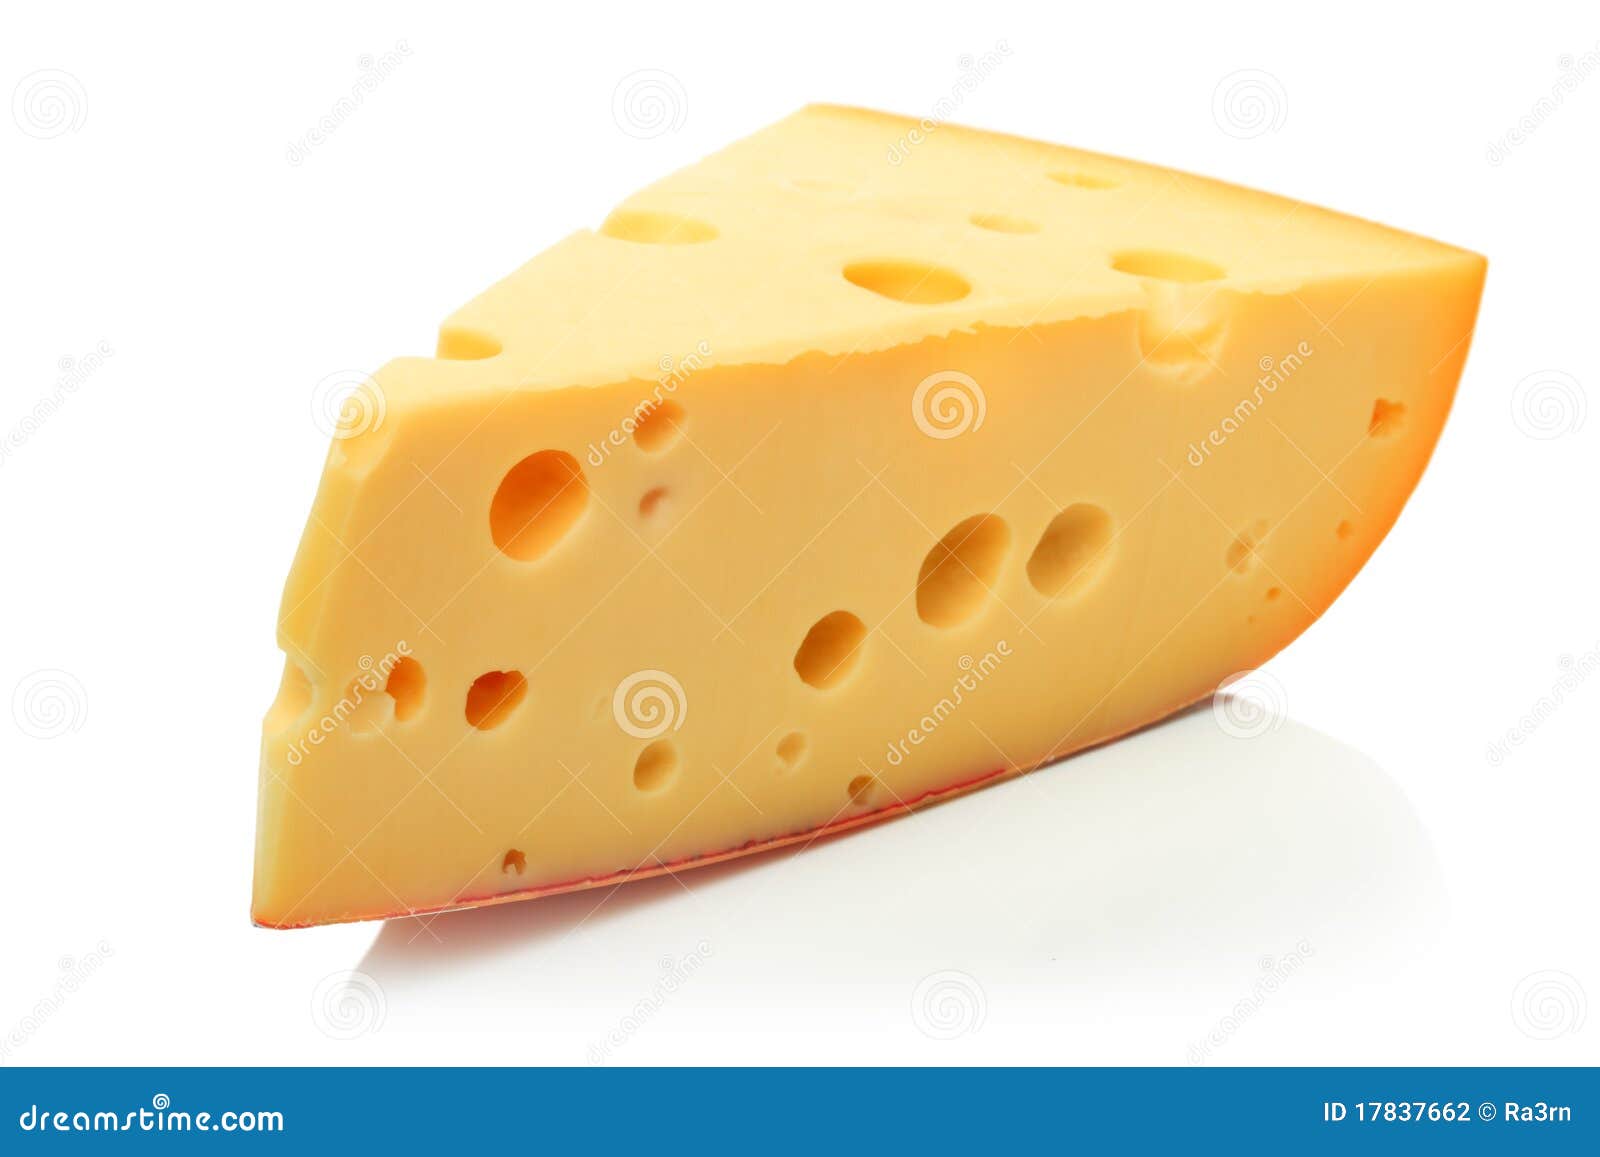 软制乳酪干酪羊乳干酪瑞士 库存图片. 图片 包括有 多孔, 成份, 商业, 不同, 成熟, 干酪, 牛奶店 - 6584593